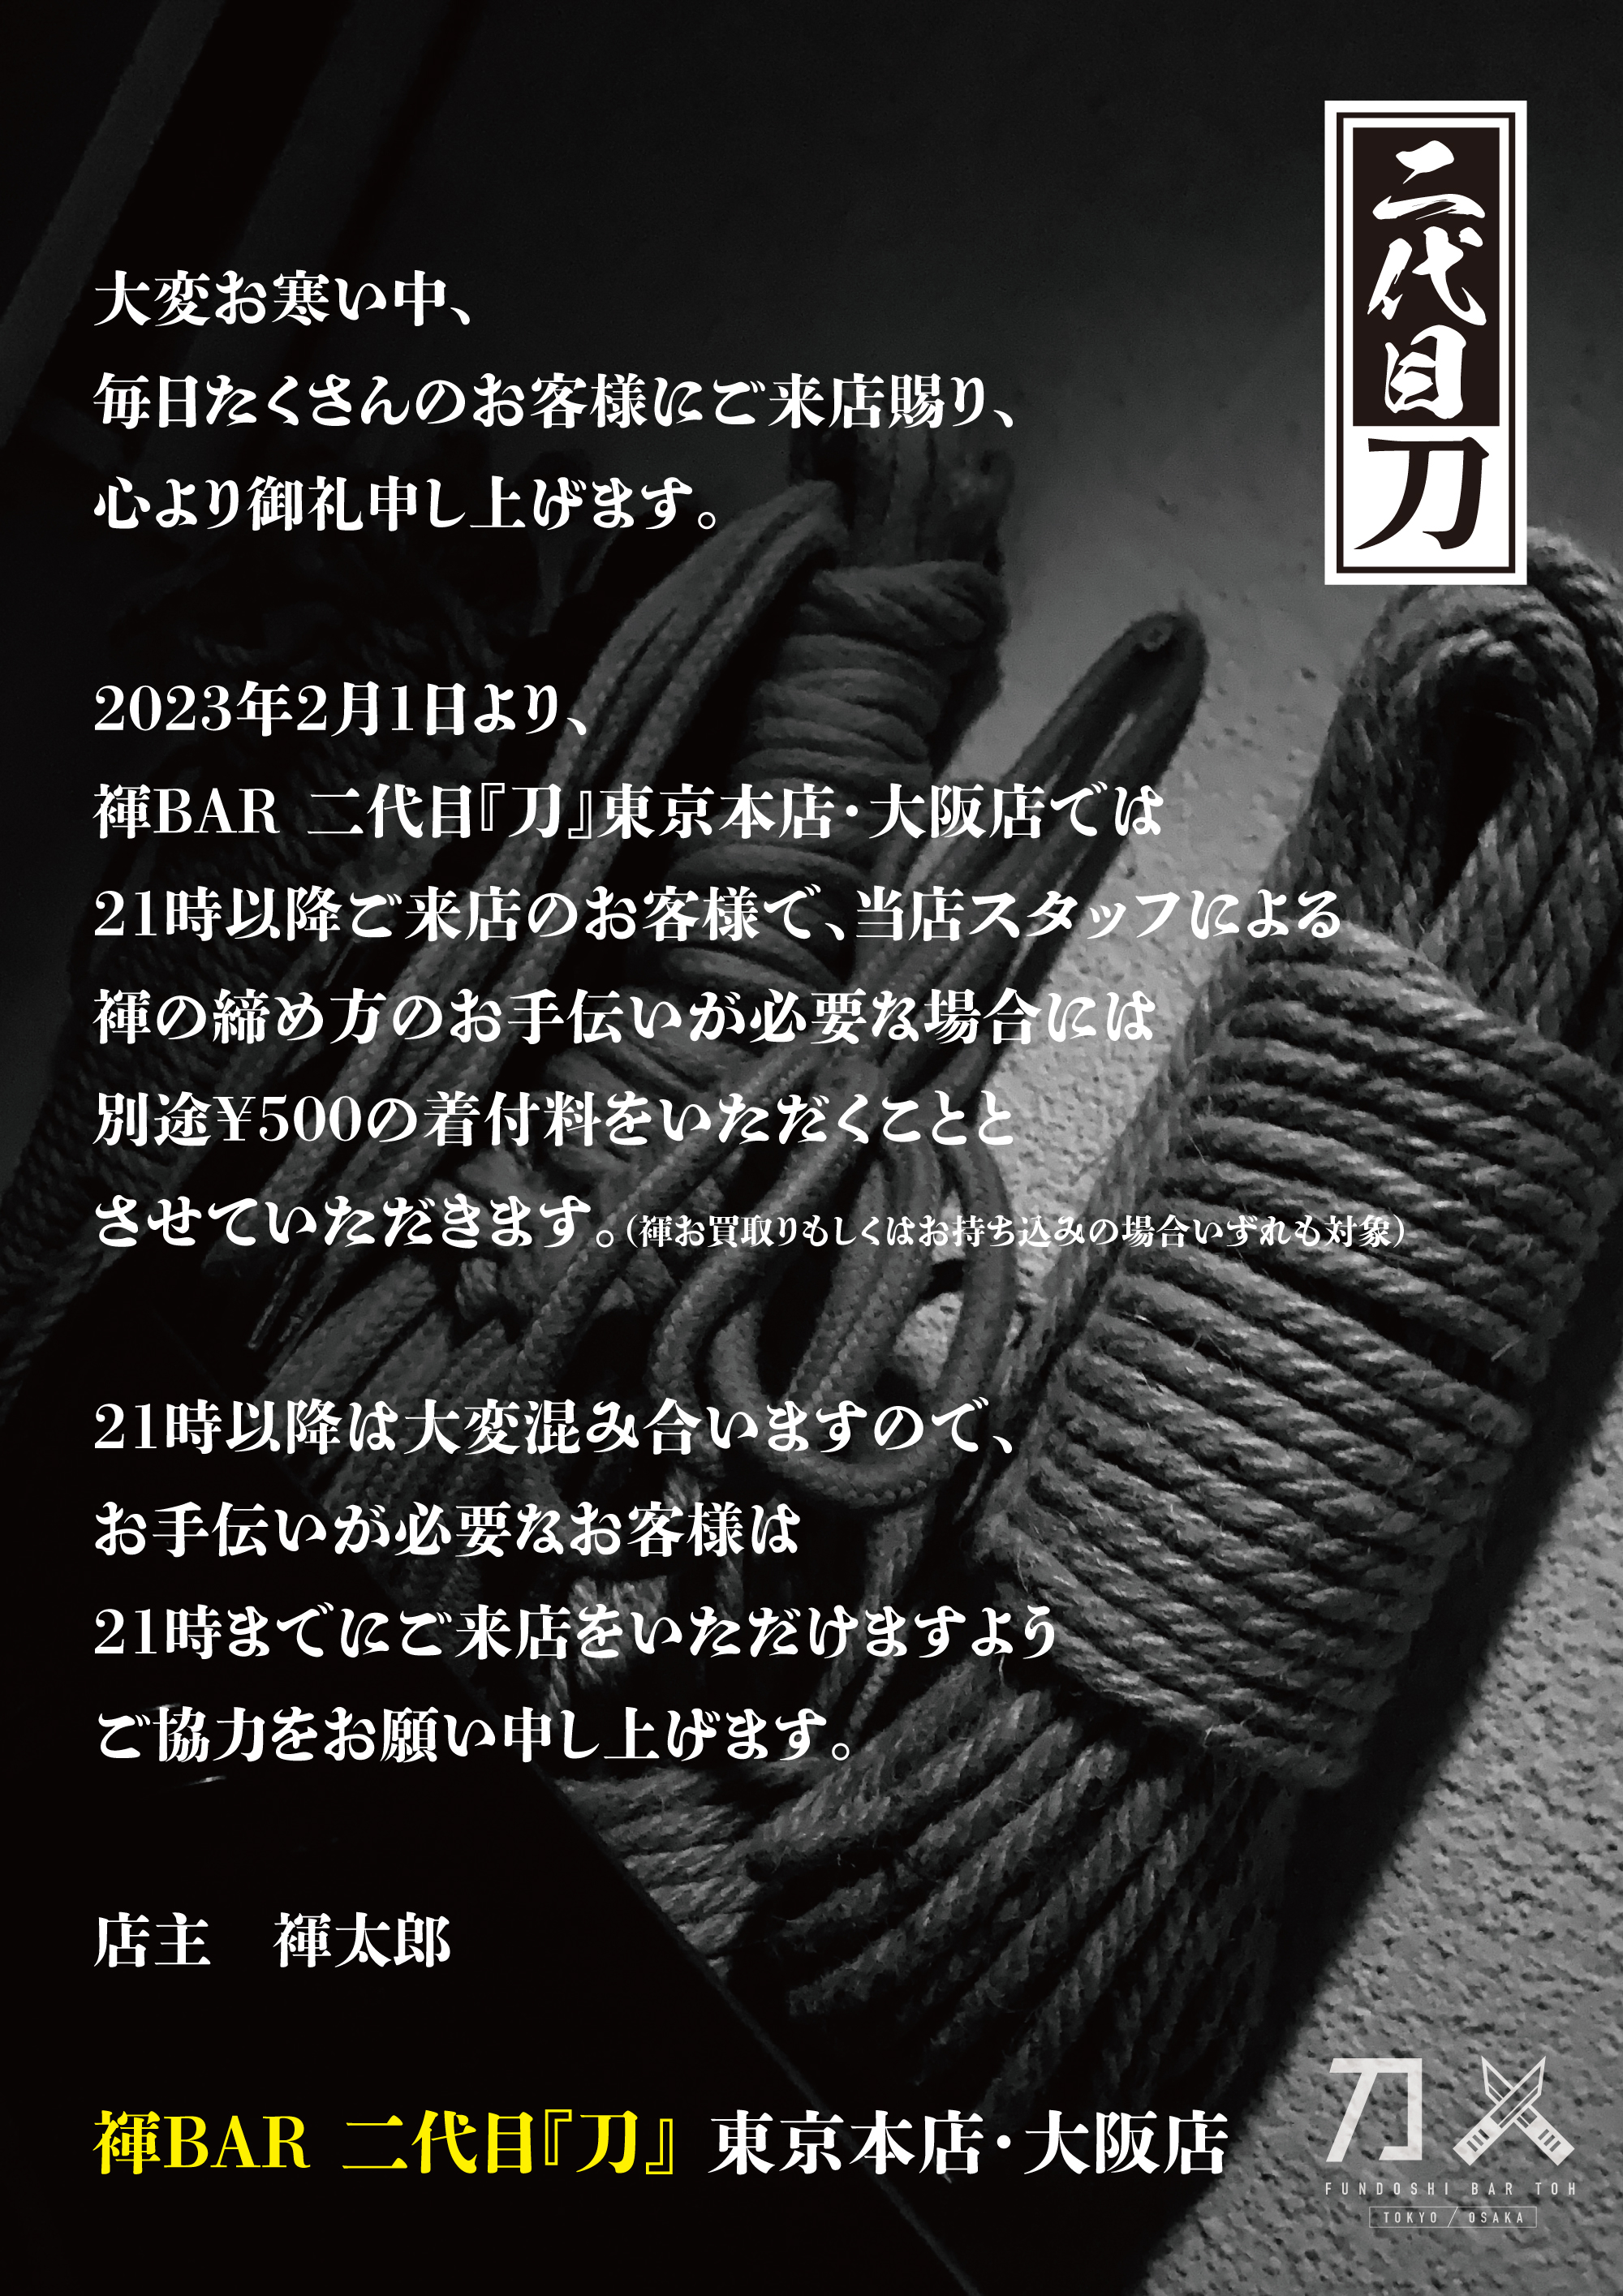 褌BAR 二代目『刀』東京本店・大阪店では、2023年2月より21時以降に褌の締め方のお手伝いご希望のお客様には別途500円の着付料を頂戴します